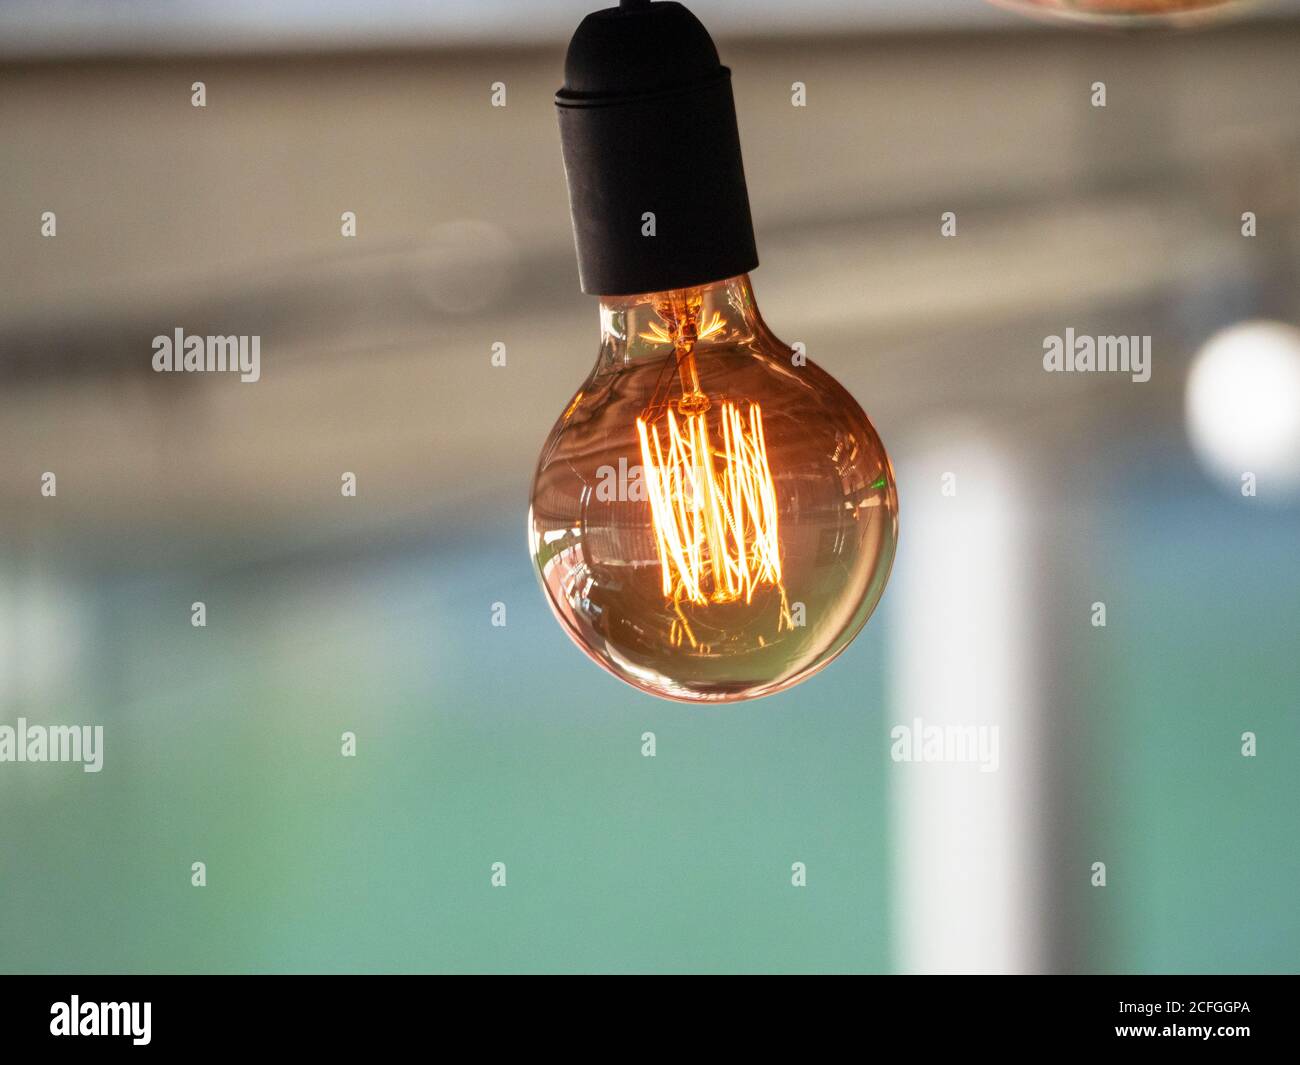 Die Retro Edison Deko Lampe mit LED Filament diffundiert ein Weiches Licht in den Raum Stockfoto